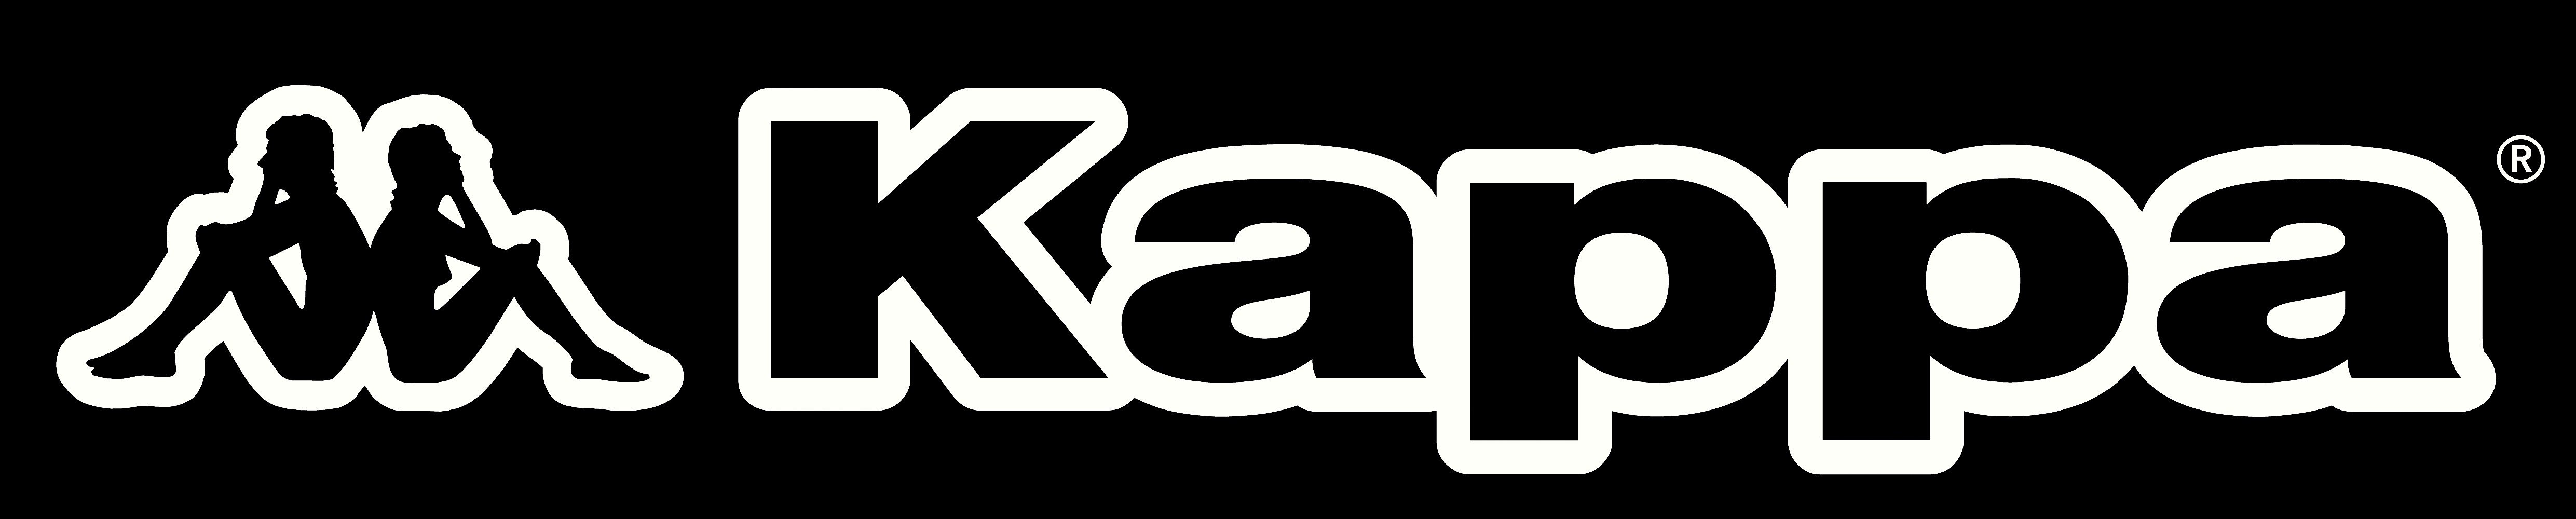 Спортмастер карра. Логотип фирмы Капа. Логотип фирмы карра. Kappa надпись. Фирма Каппа спортивная логотип.